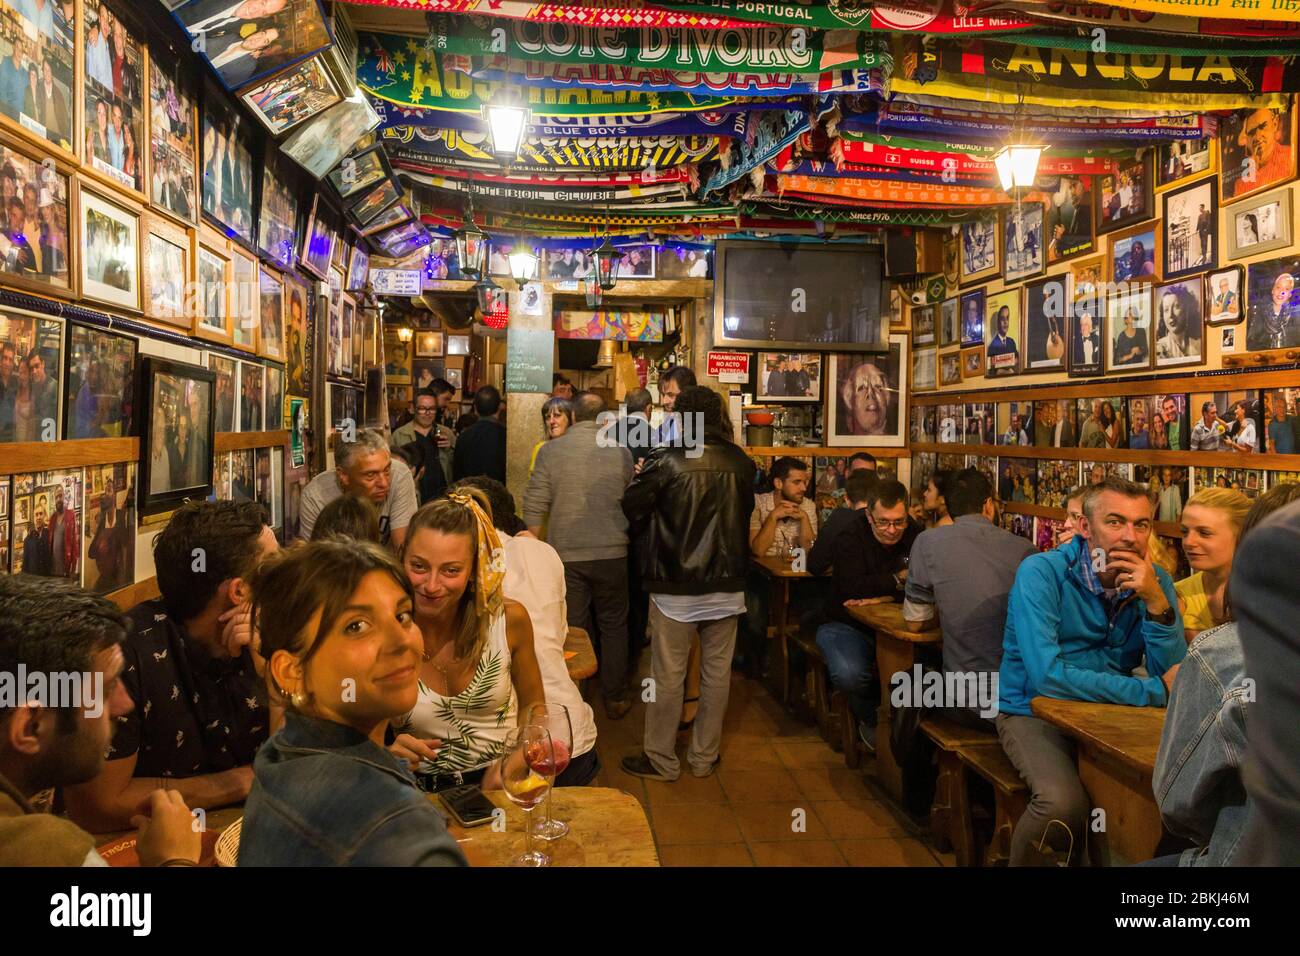 Portogallo, Lisbona, quartiere Bairro Alto, Bairro Alto è una delle zone più frequentate di Lisbona di notte con un'alta concentrazione di bar e ristoranti, affollate all'interno di un bar Fado Foto Stock